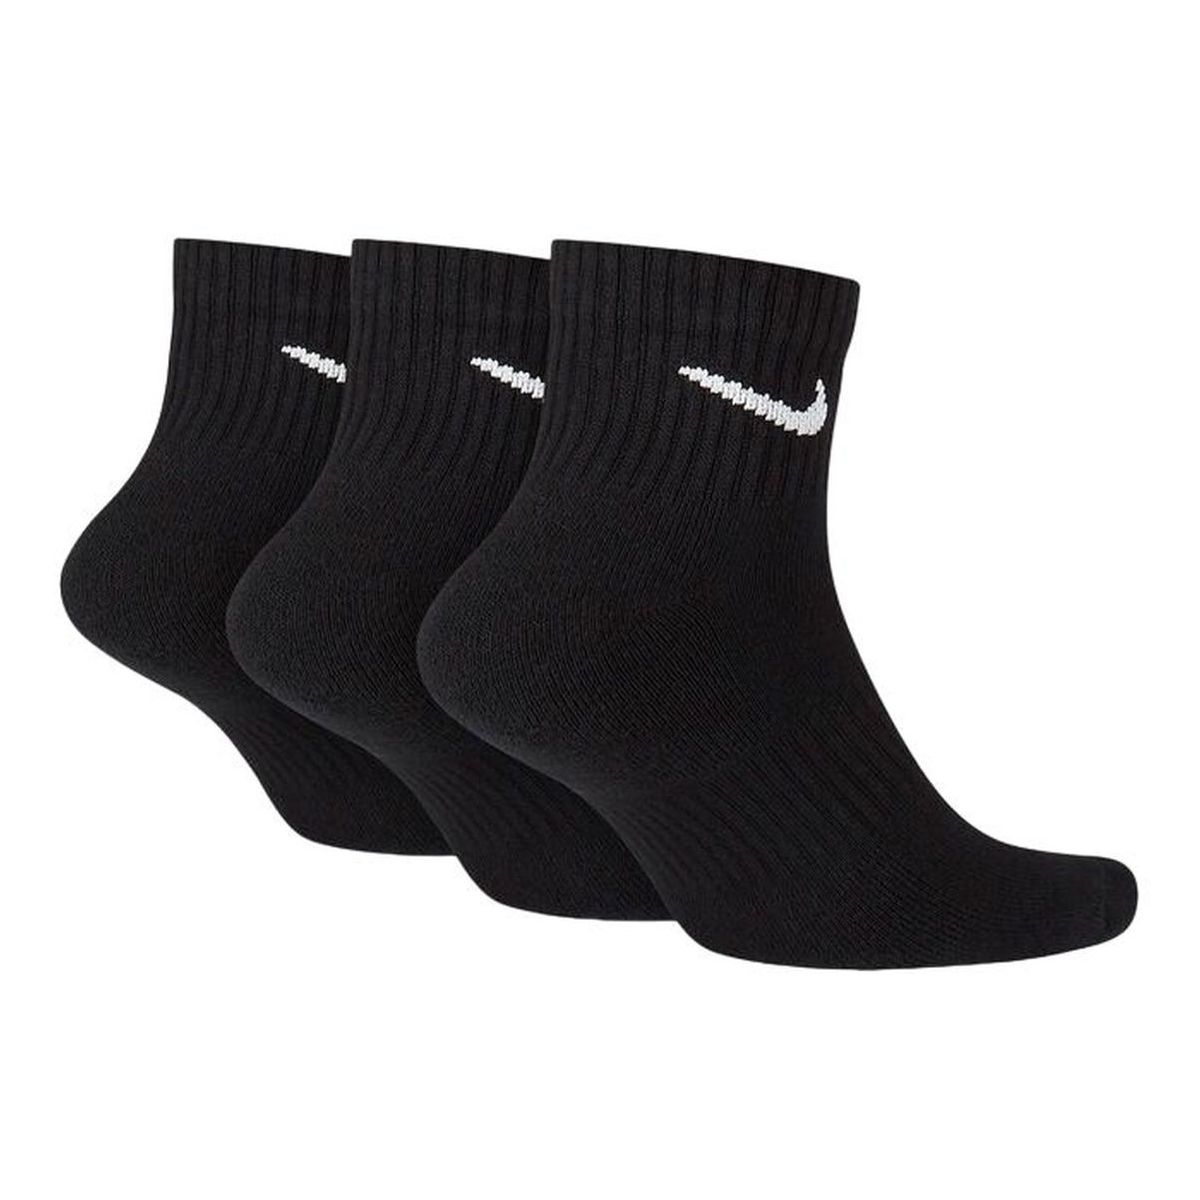 Nike chaussettes noir homme